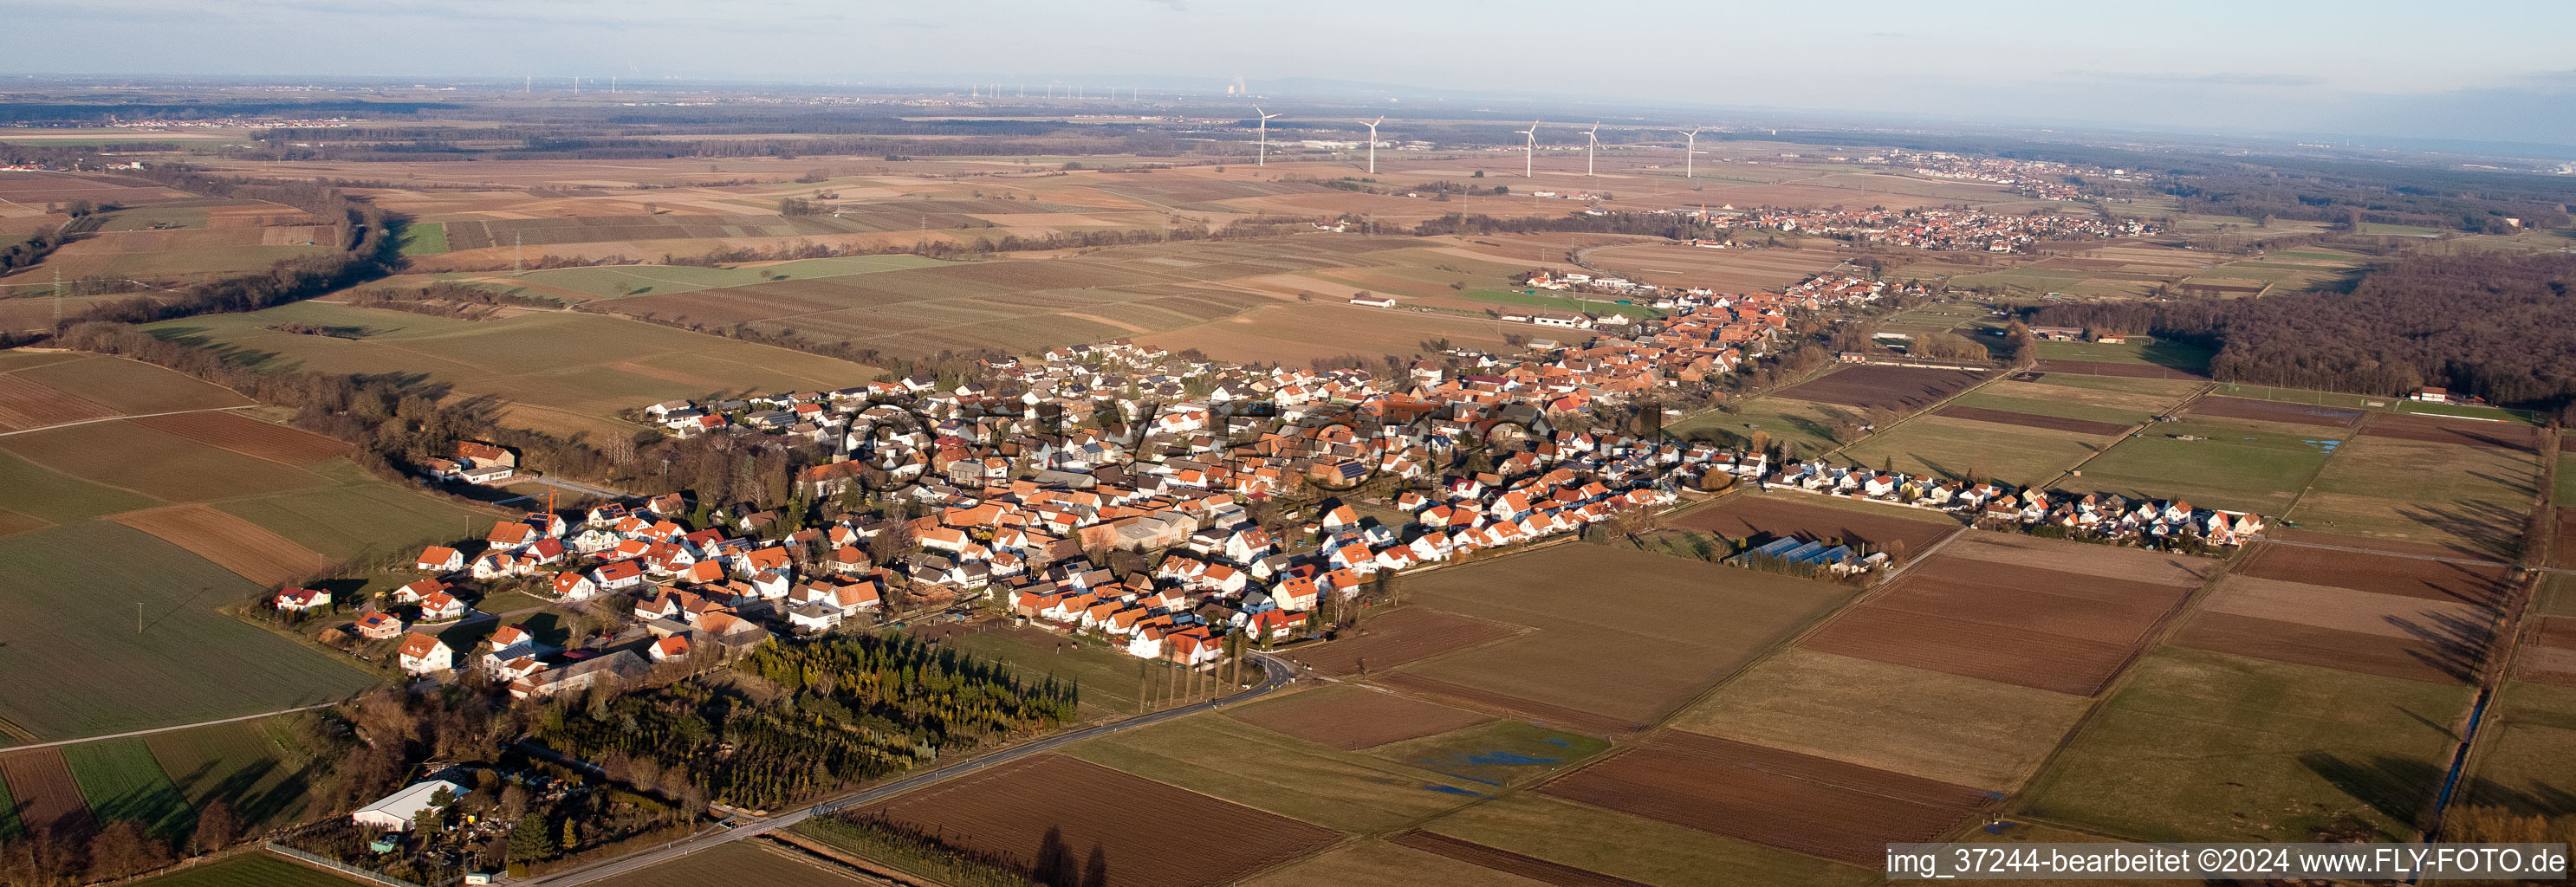 Vue aérienne de Champs agricoles et terres agricoles en perspective panoramique à Freckenfeld dans le département Rhénanie-Palatinat, Allemagne